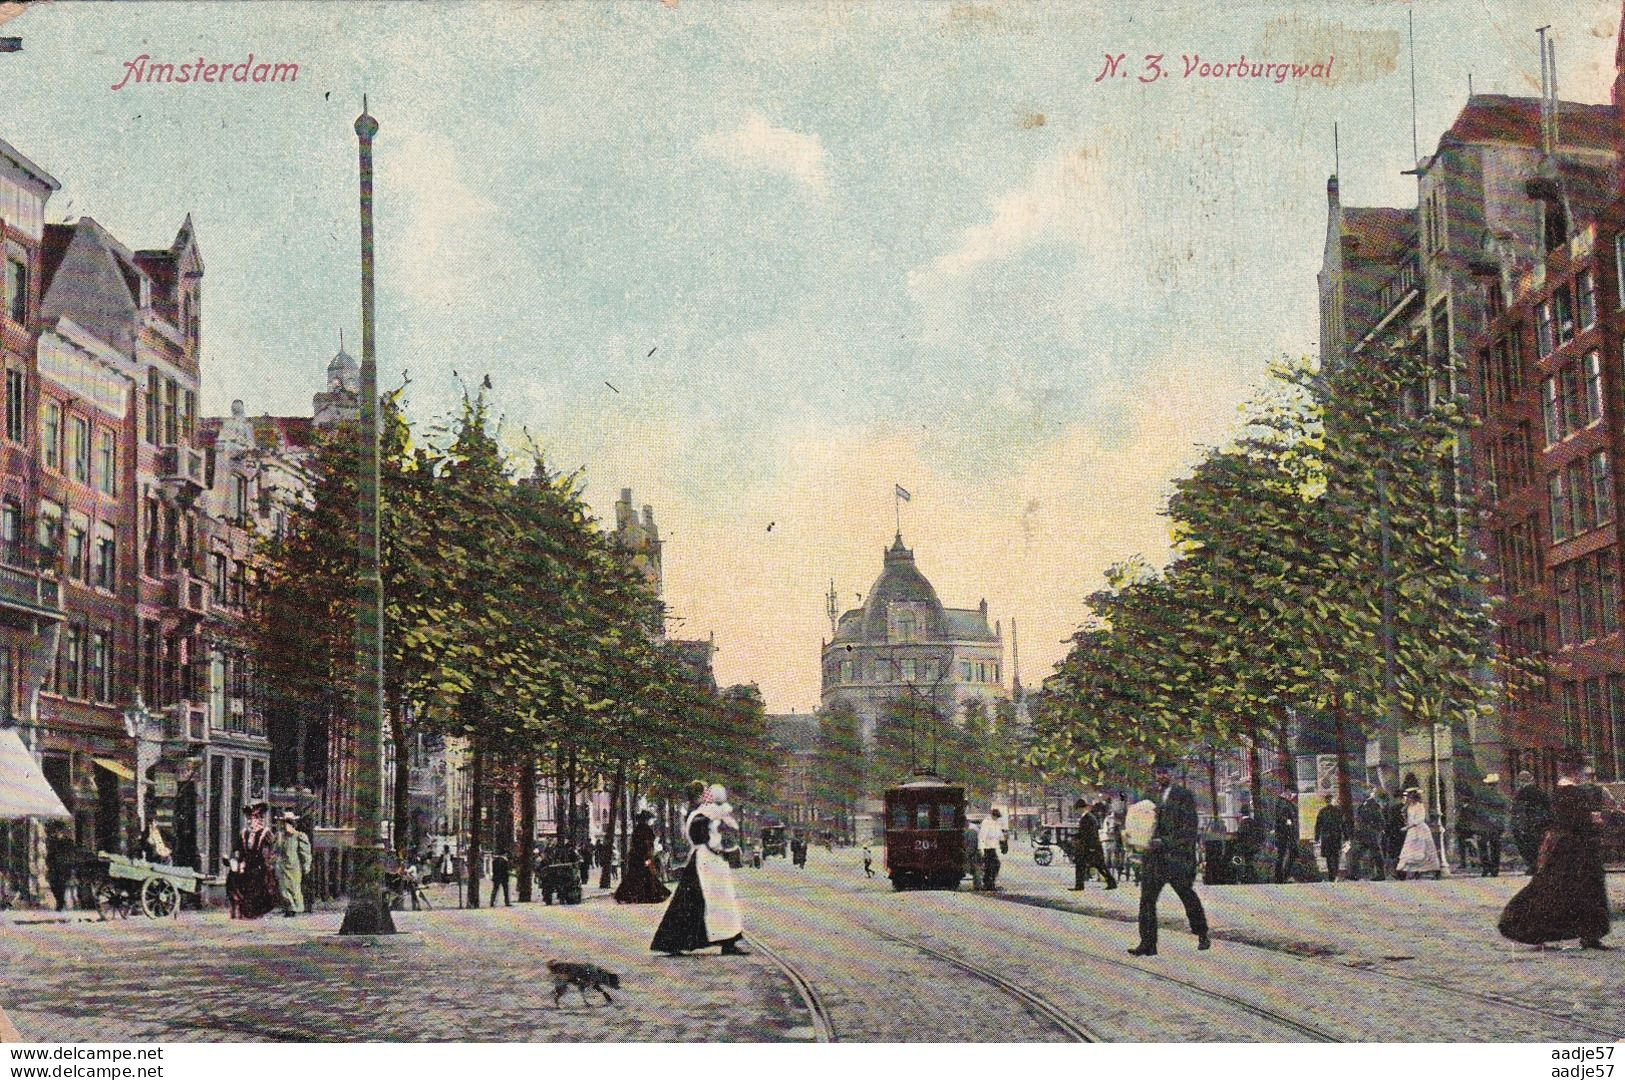 Netherlands Pays Bas Amsterdam N.Z. Voorburgwal Tram 1909 - Tranvía